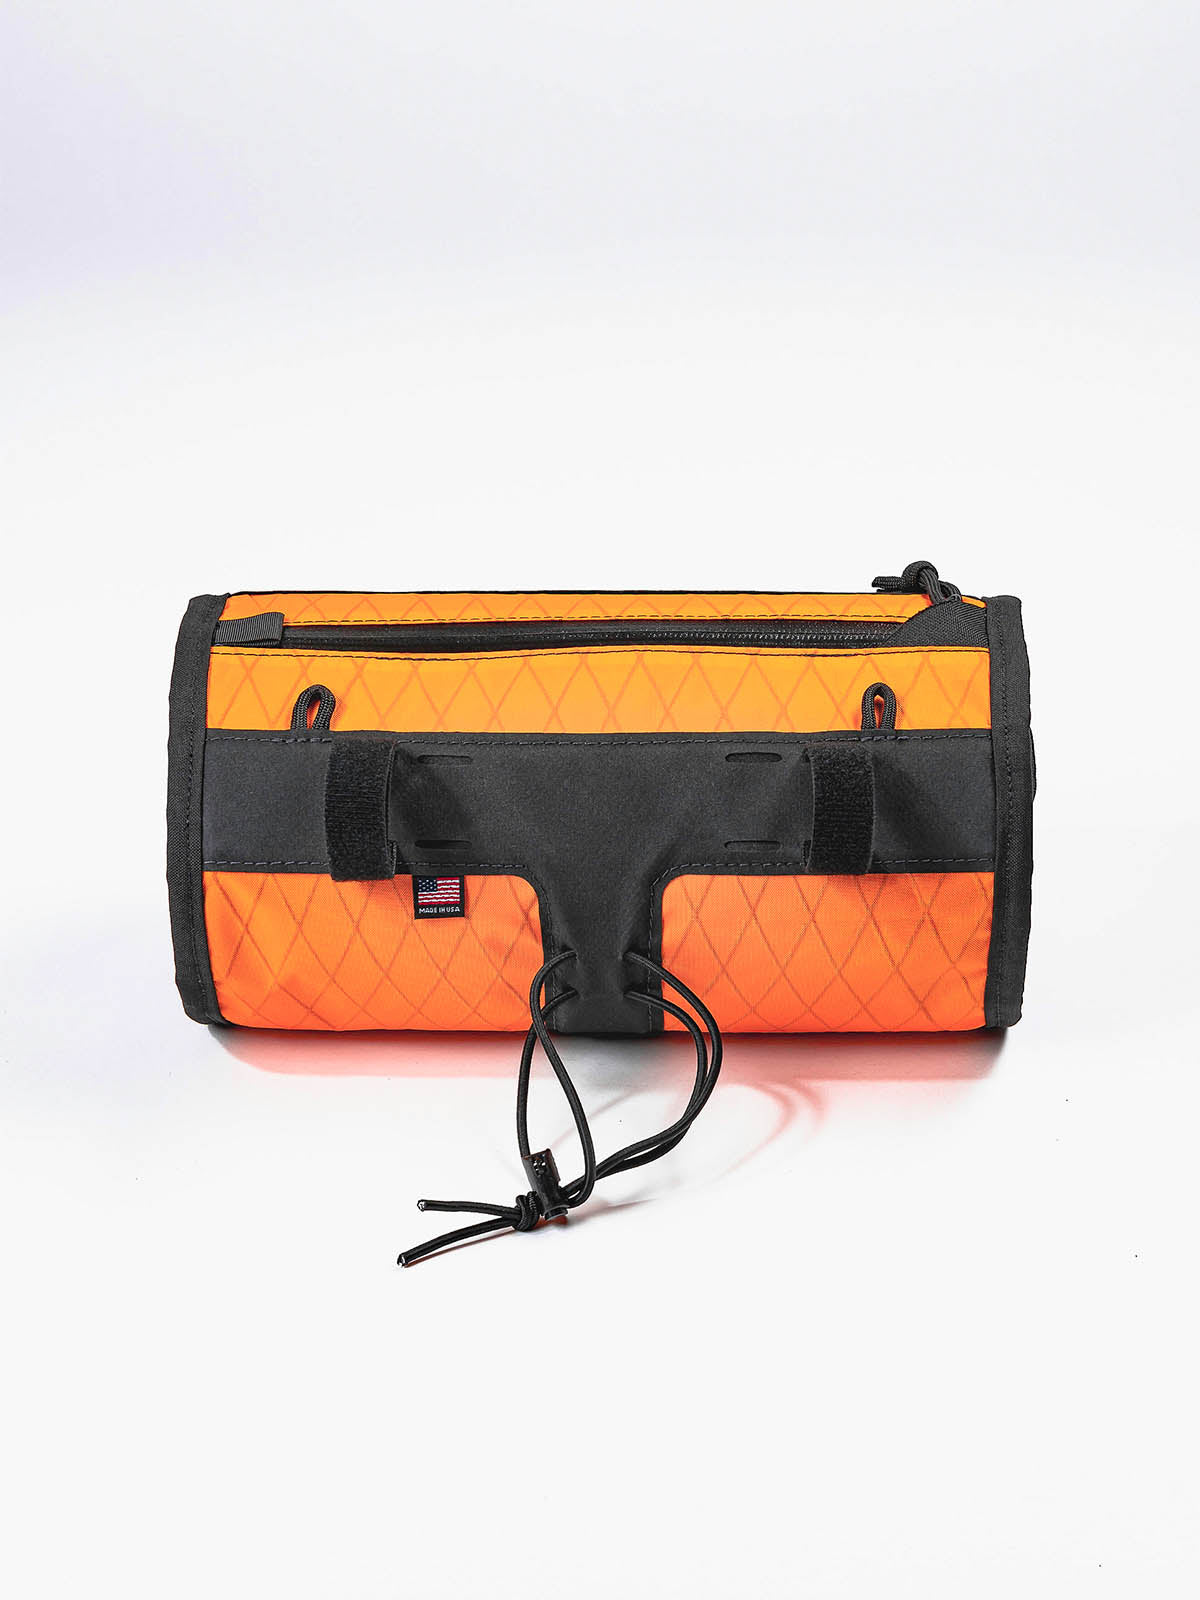 Toro Grande Handlebar Bag by Mission Workshop - Säänkestävät laukut ja tekniset vaatteet - San Francisco & Los Angeles - Rakennettu kestämään - ikuinen takuu